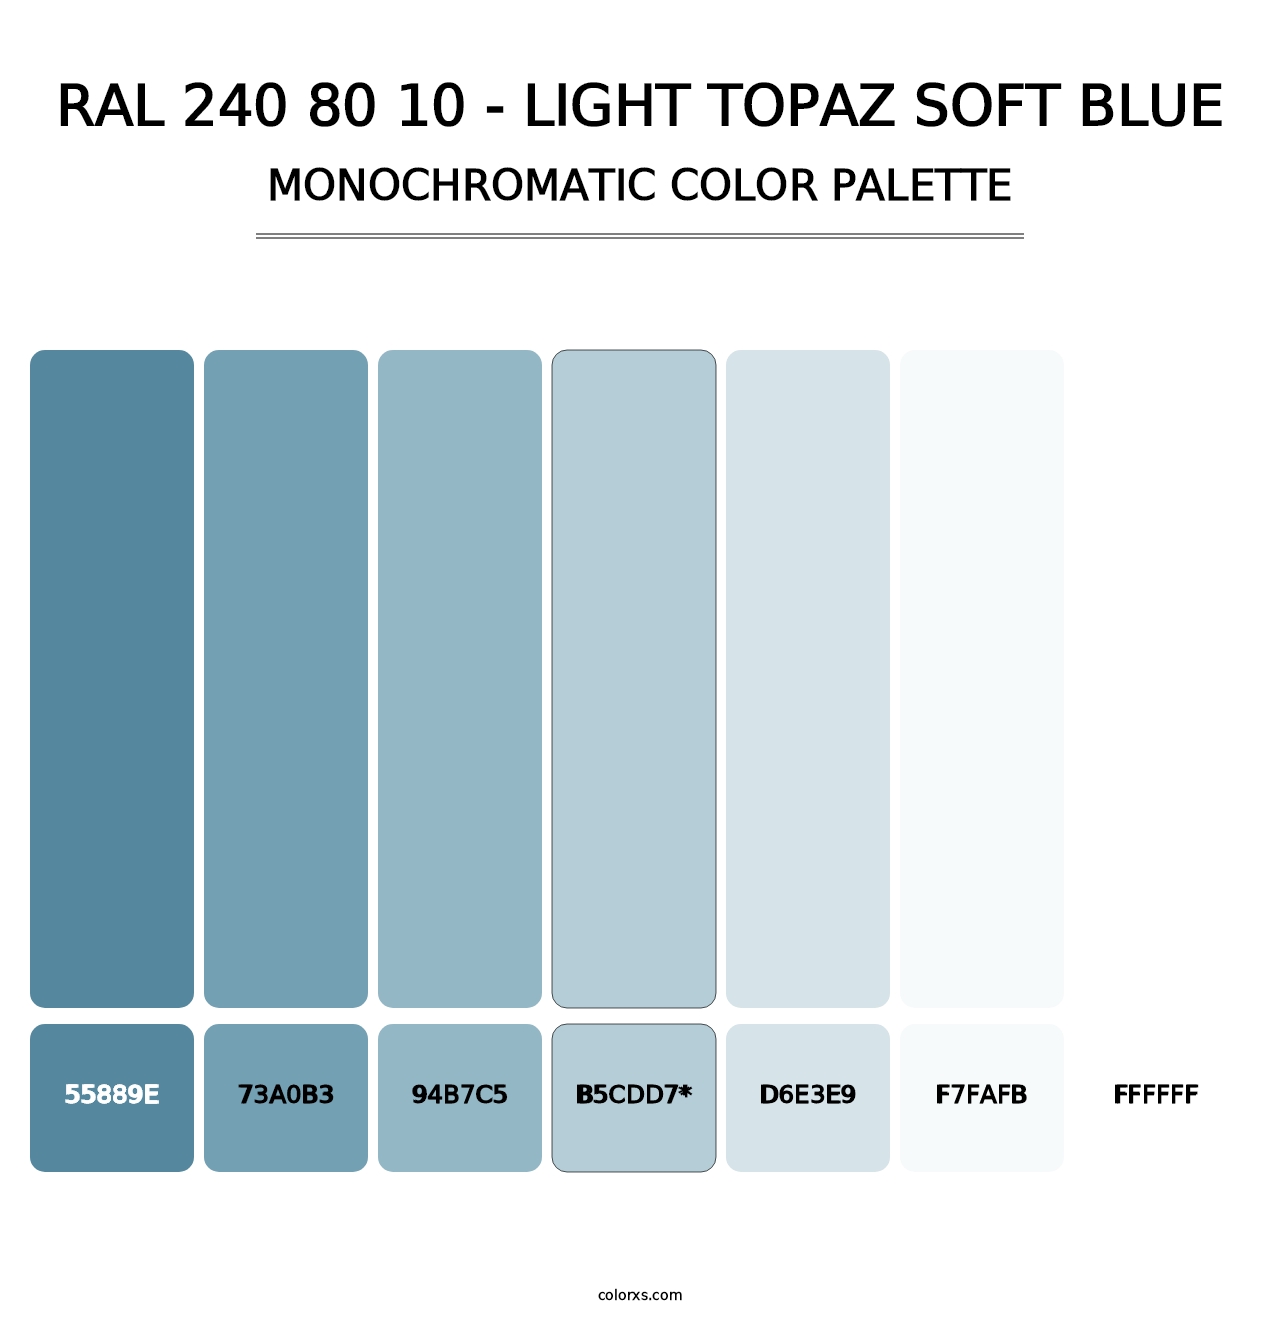 RAL 240 80 10 - Light Topaz Soft Blue - Monochromatic Color Palette